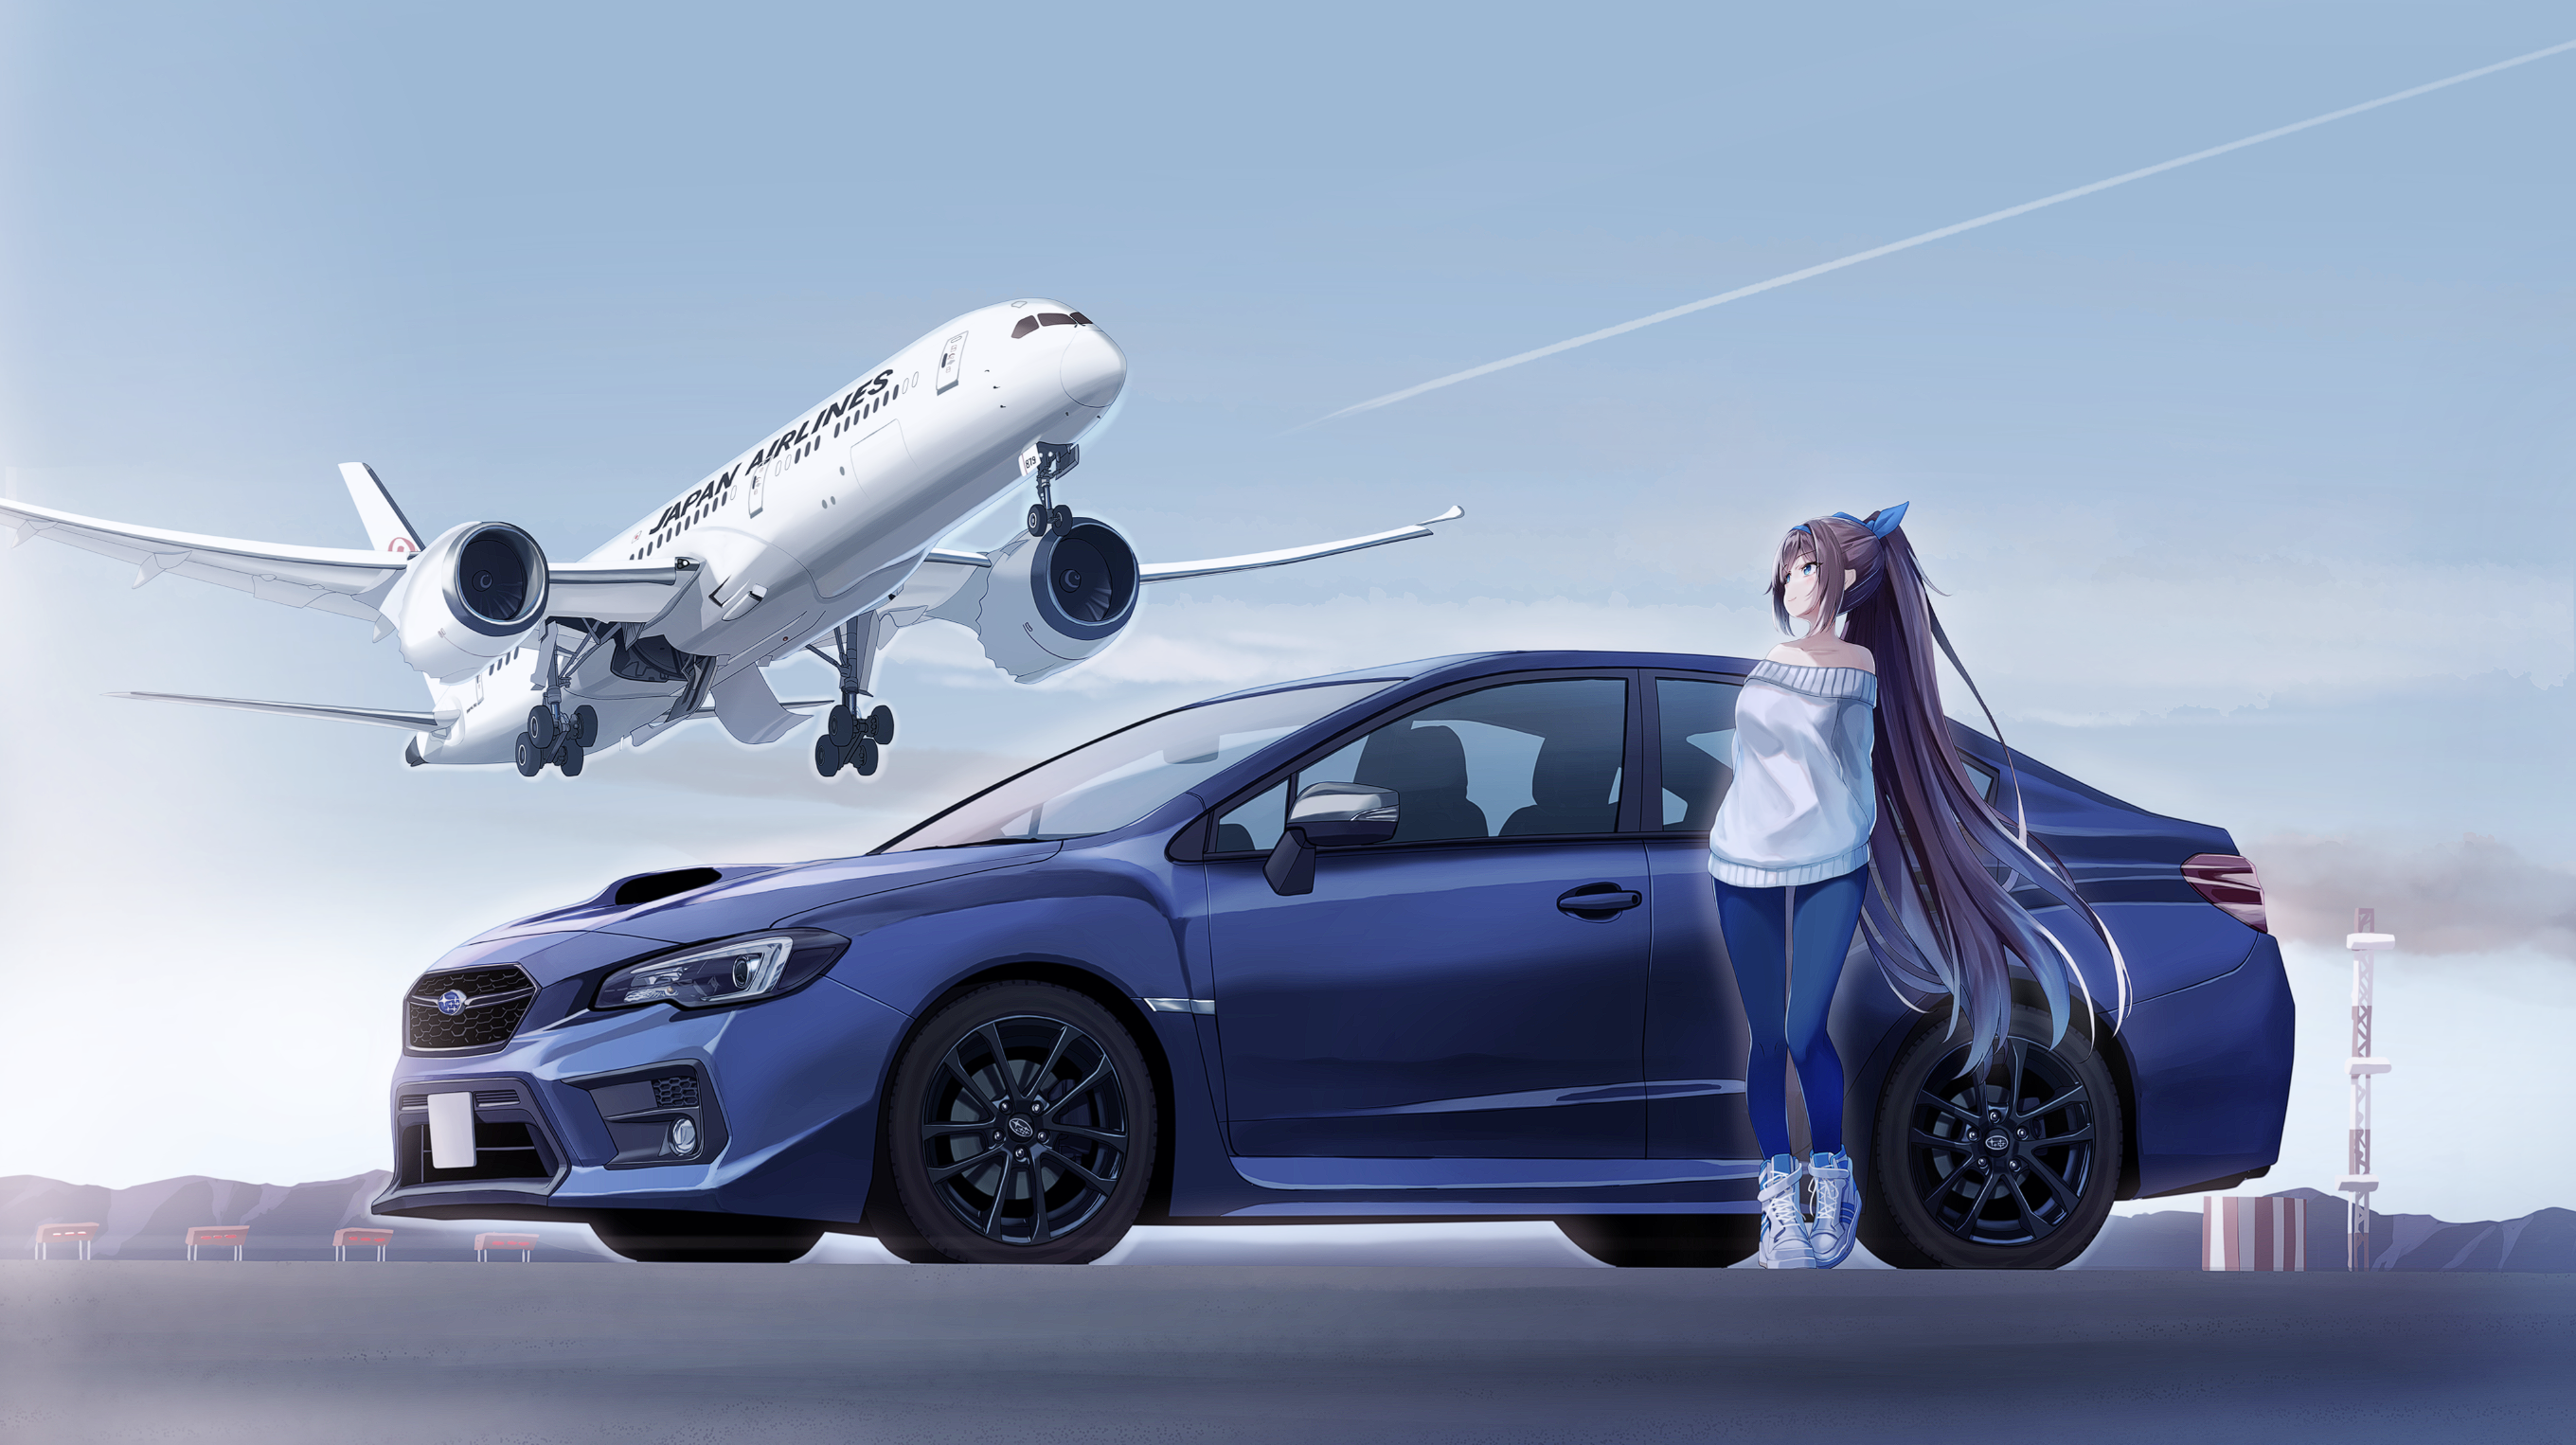 Anime Anime Girls Airplane Aircraft Subaru Japan Airlines Blue Cars Subaru WRX STi S208 2720x1526